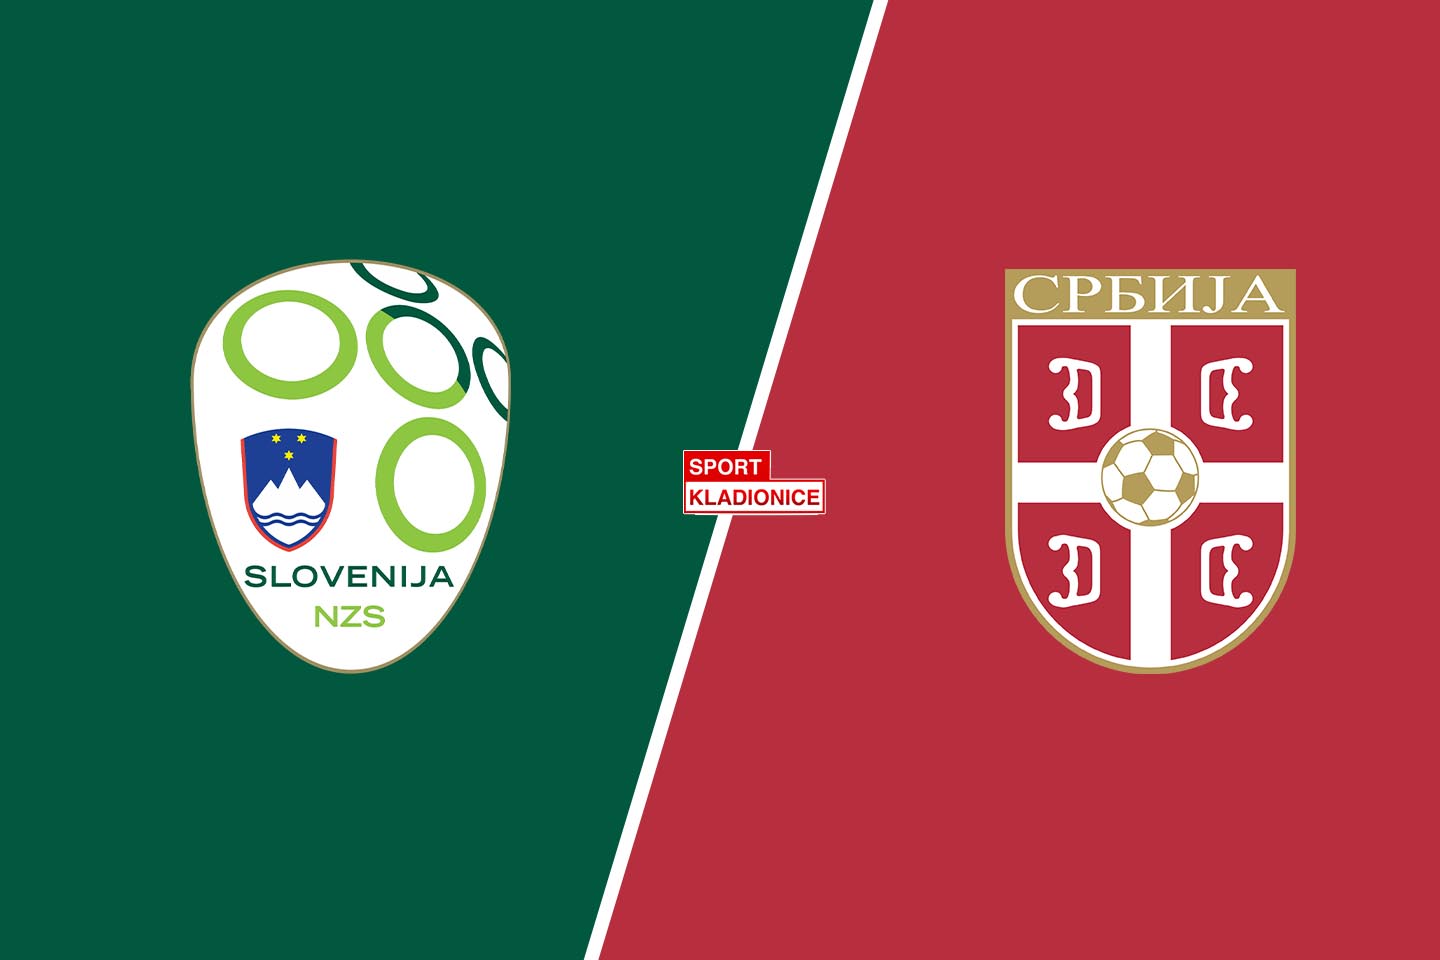 Slovenija vs. Srbija